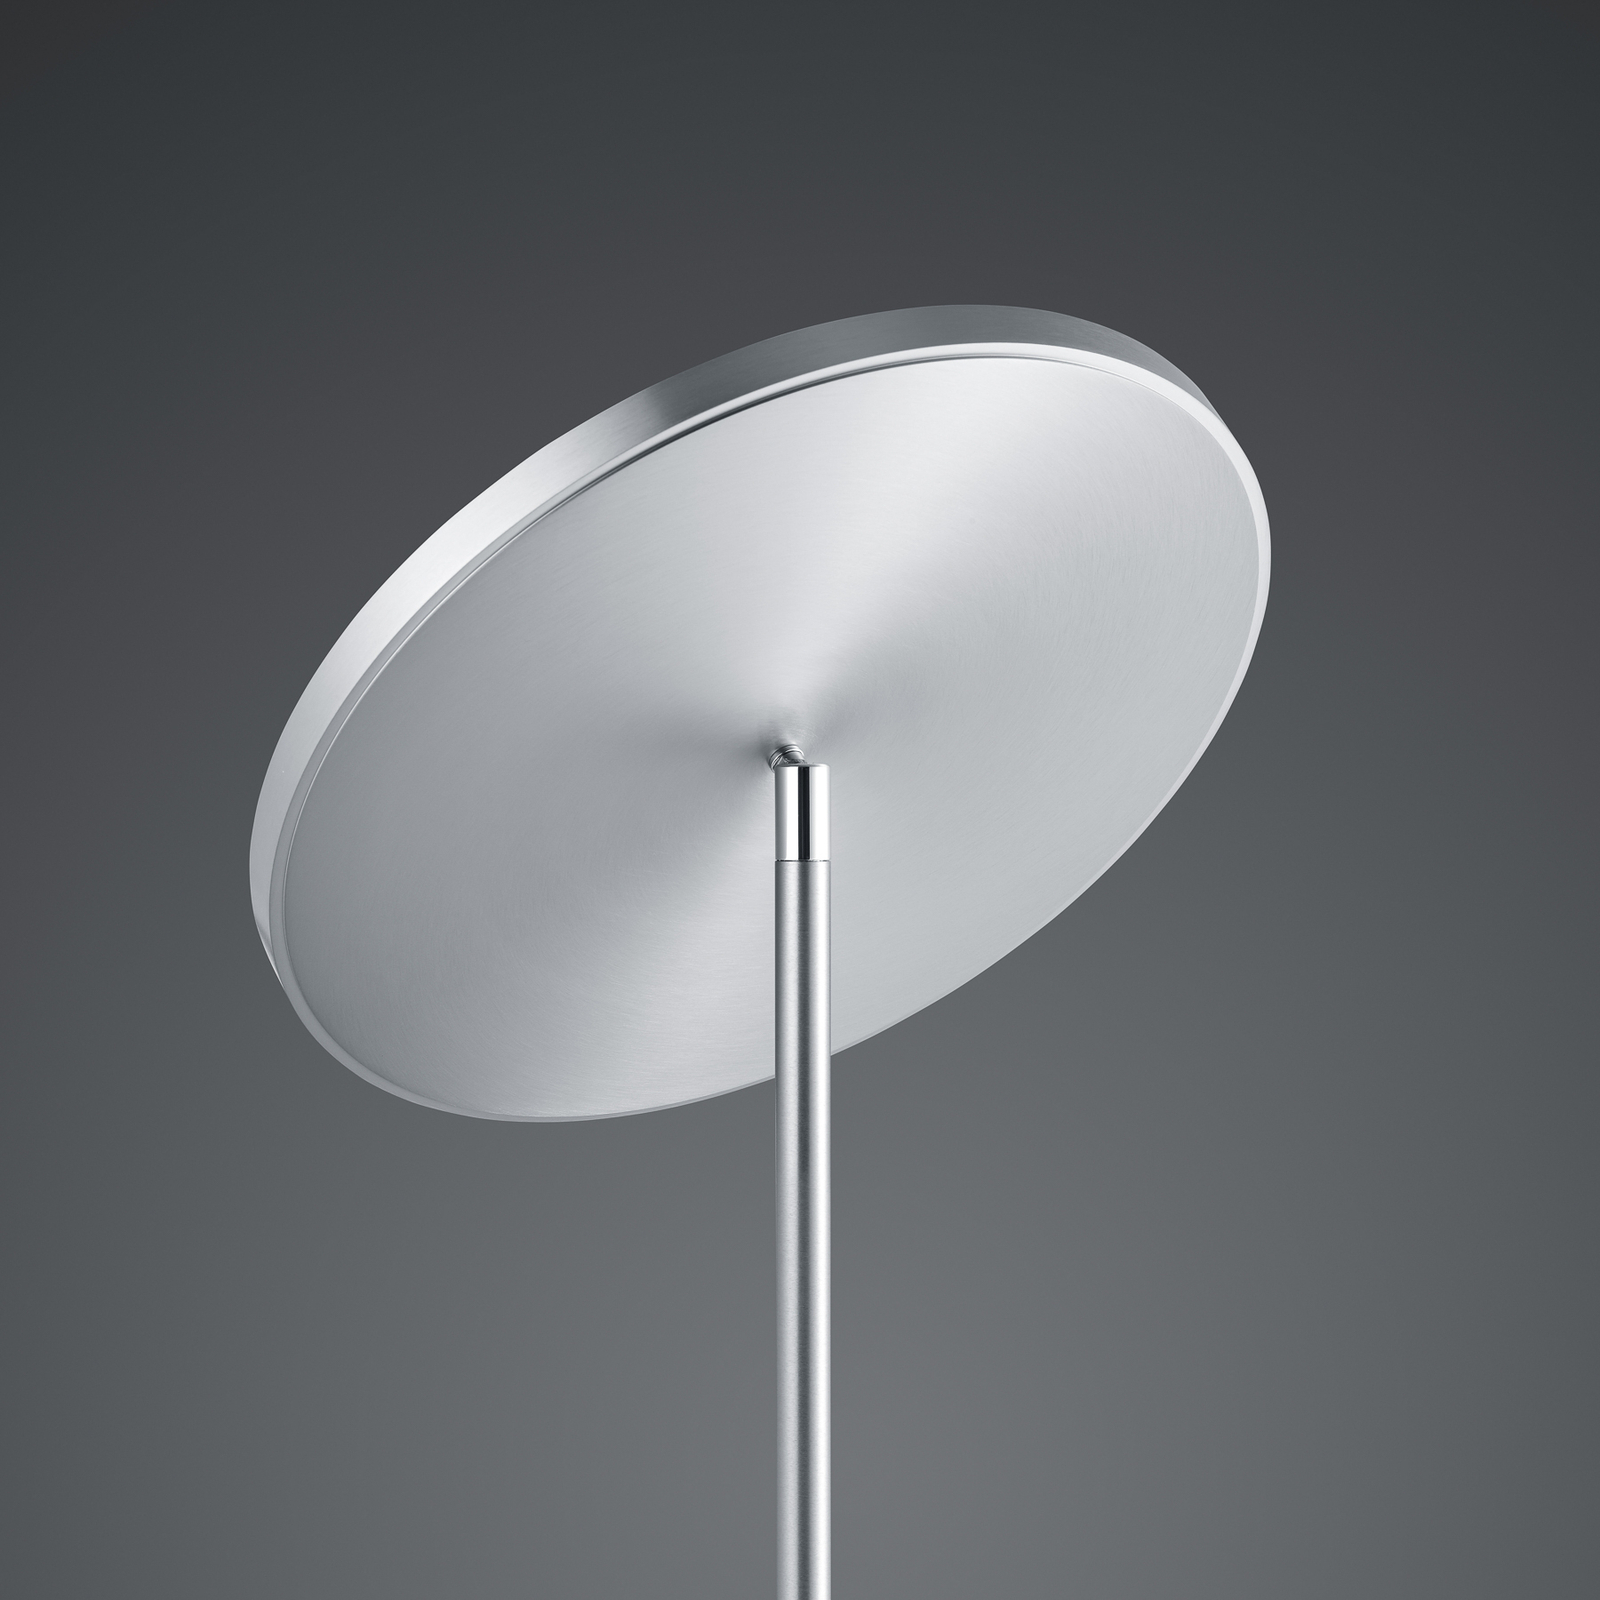 BANKAMP Solid lampadar LED cu variator nichel/crom